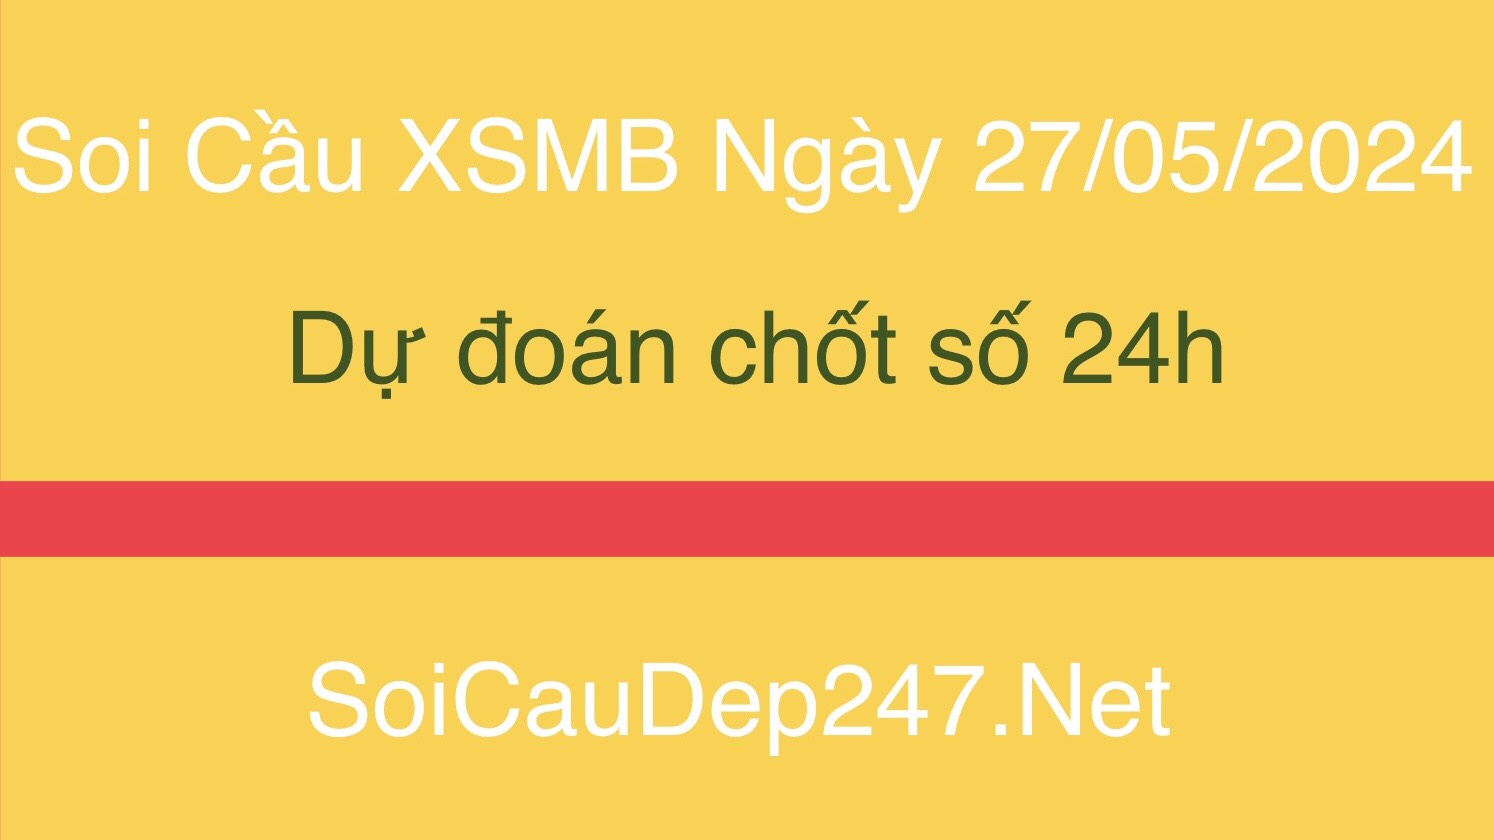 soi-cau-xsmb-ngay-28-05-2024-du-doan-chot-so-mb-24h